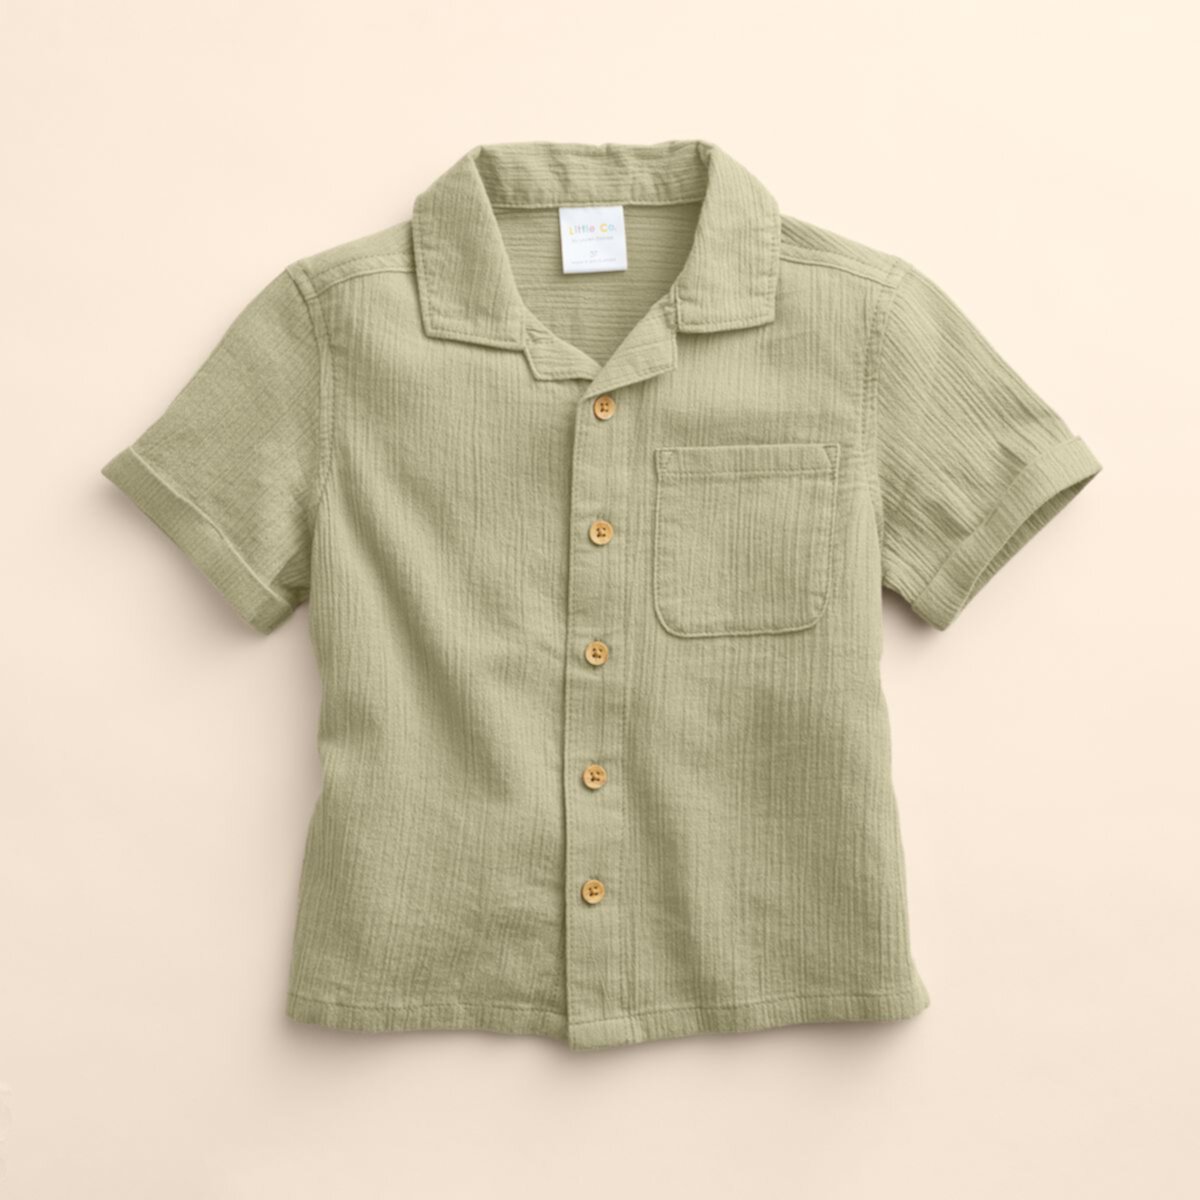 Детское джерси Little Co. by Lauren Conrad Organic Button-Up Shirt Little Co. by Lauren Conrad